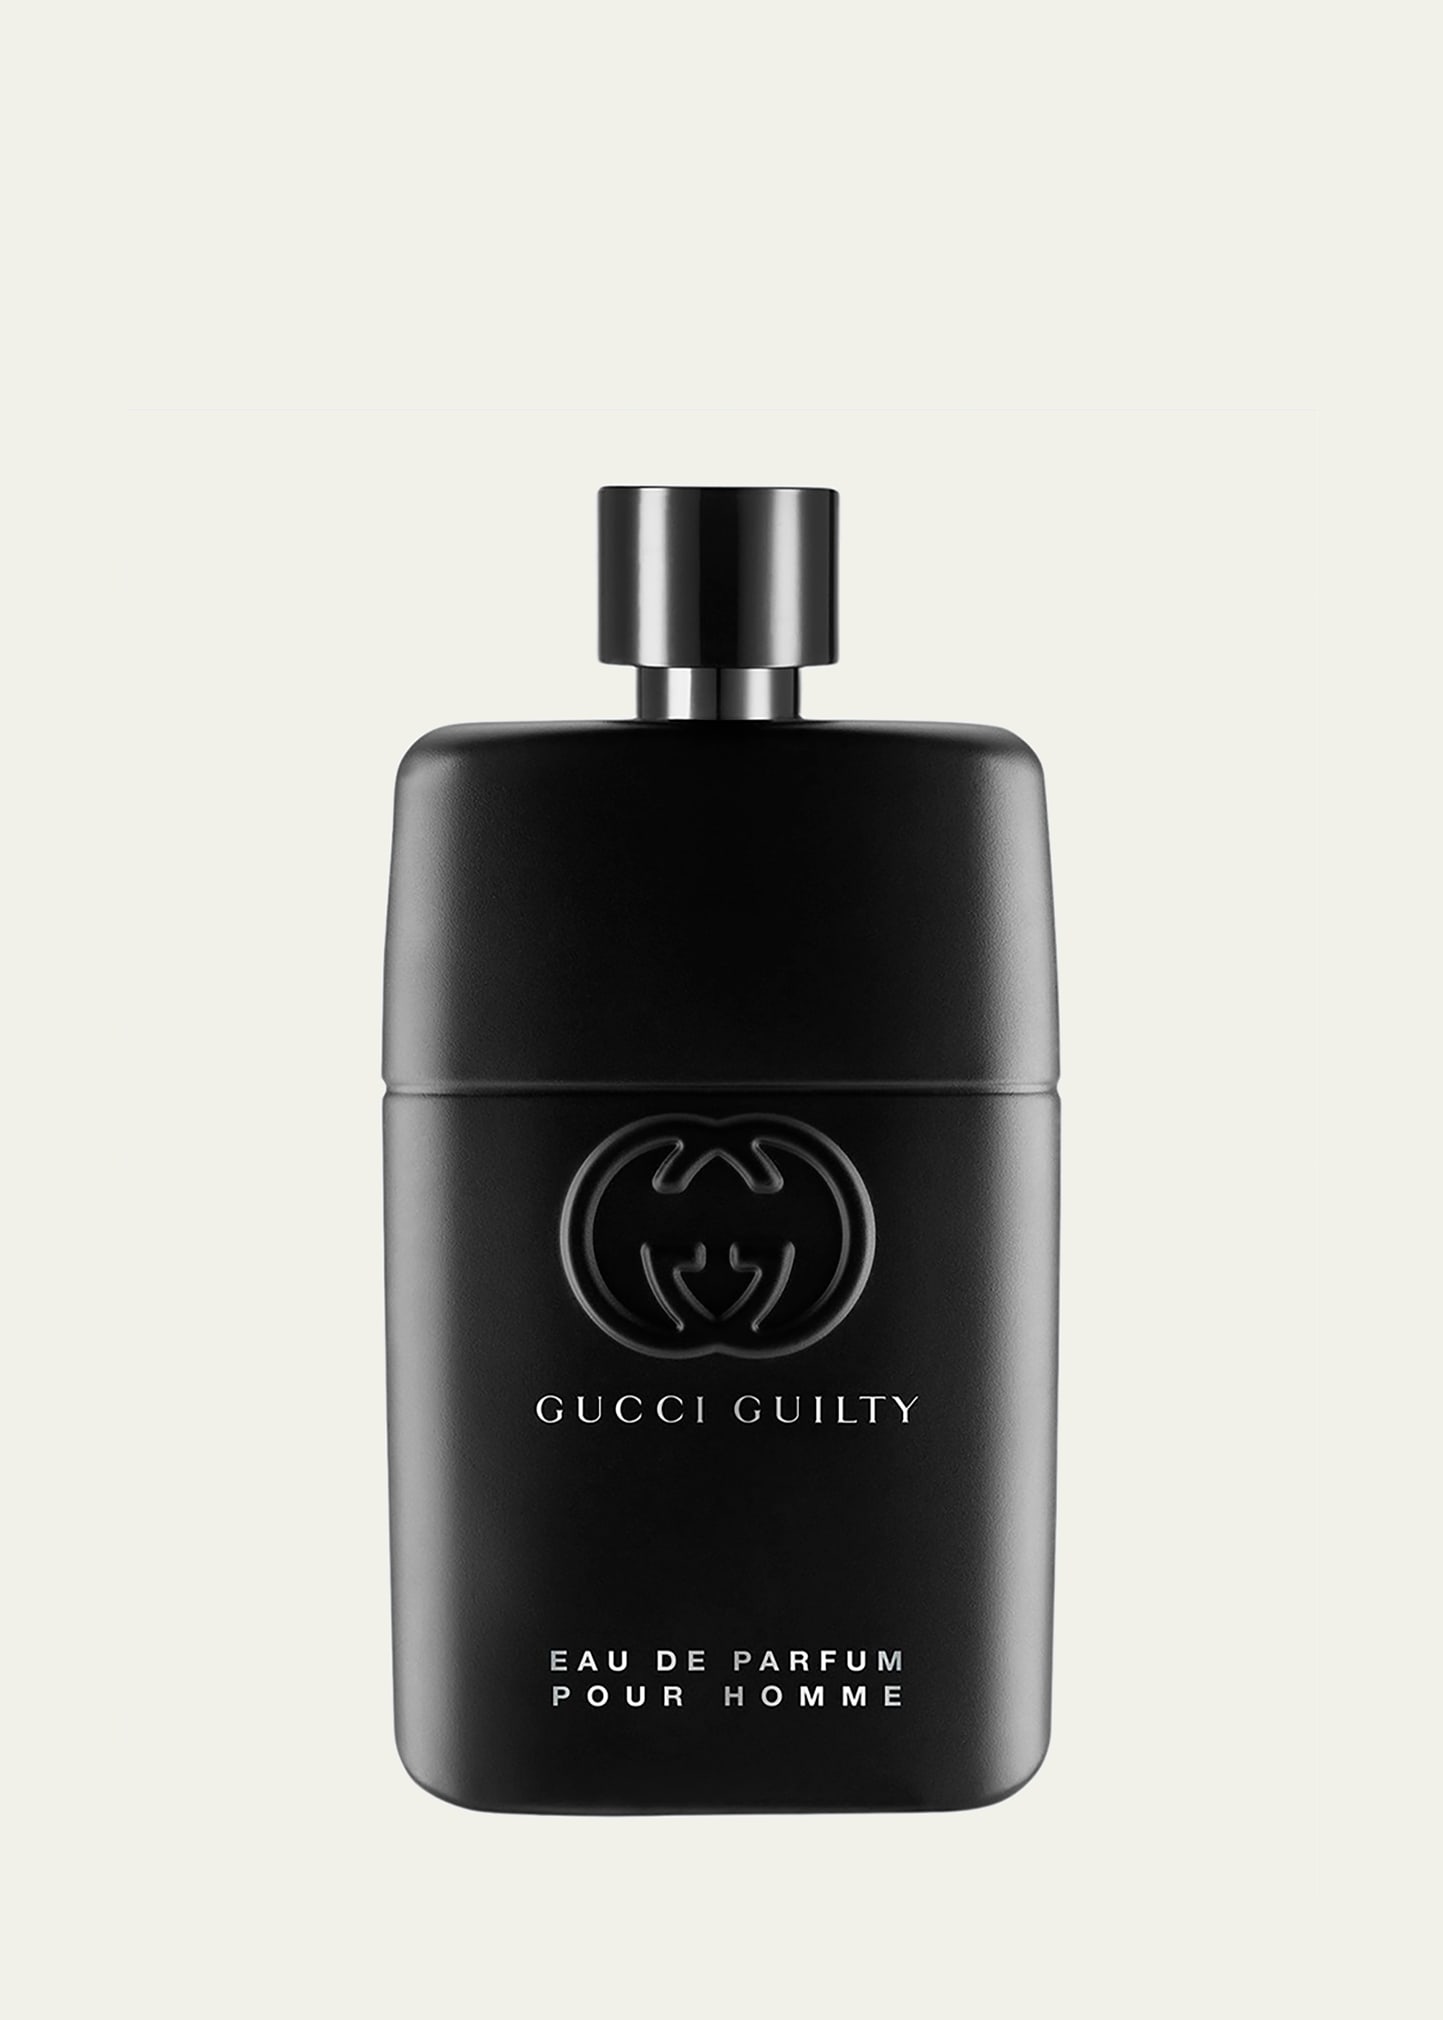 Gucci Guilty Pour Homme Eau de Parfum, 3 oz.